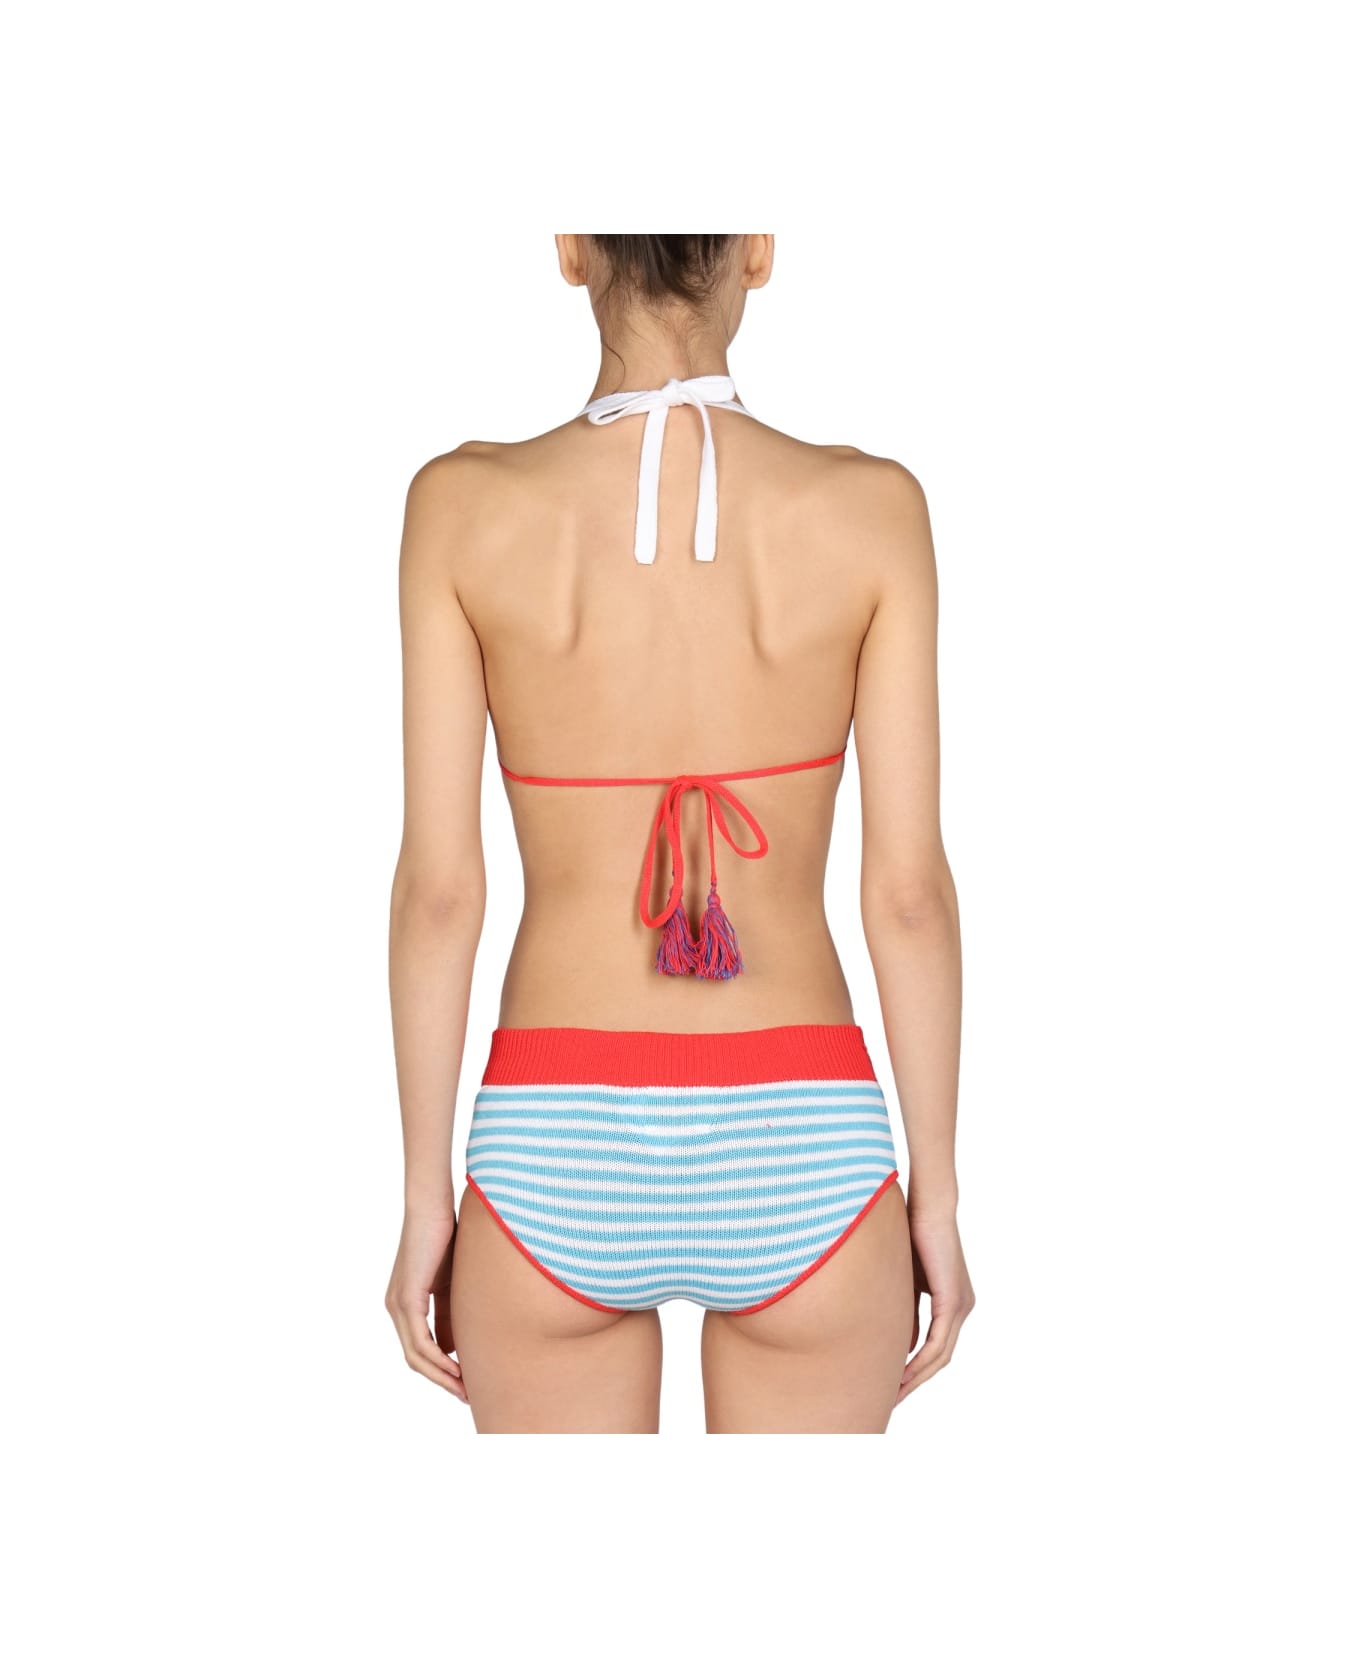 Gallo Striped Bikini Briefs - MULTICOLOUR 水着